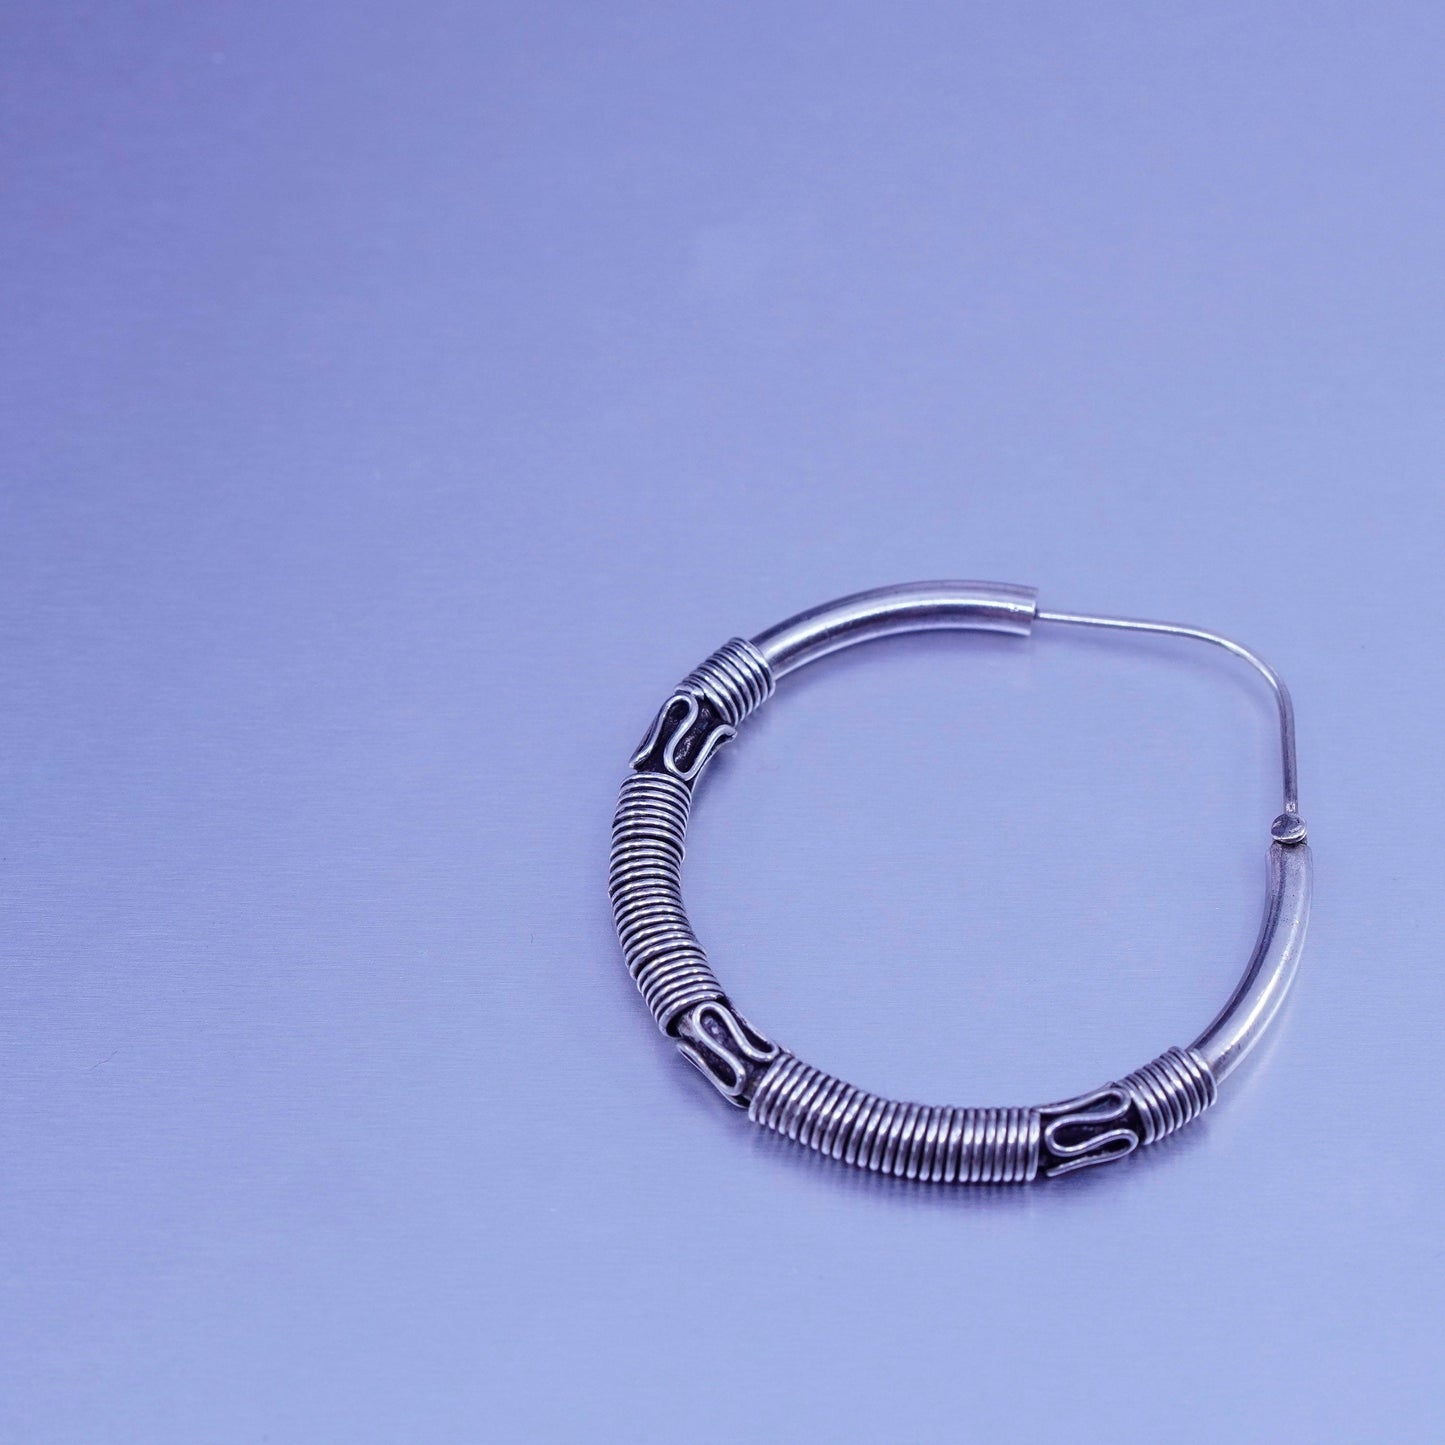 1.5”, vintage Sterling silver handmade earrings, wired 925 simple hoops